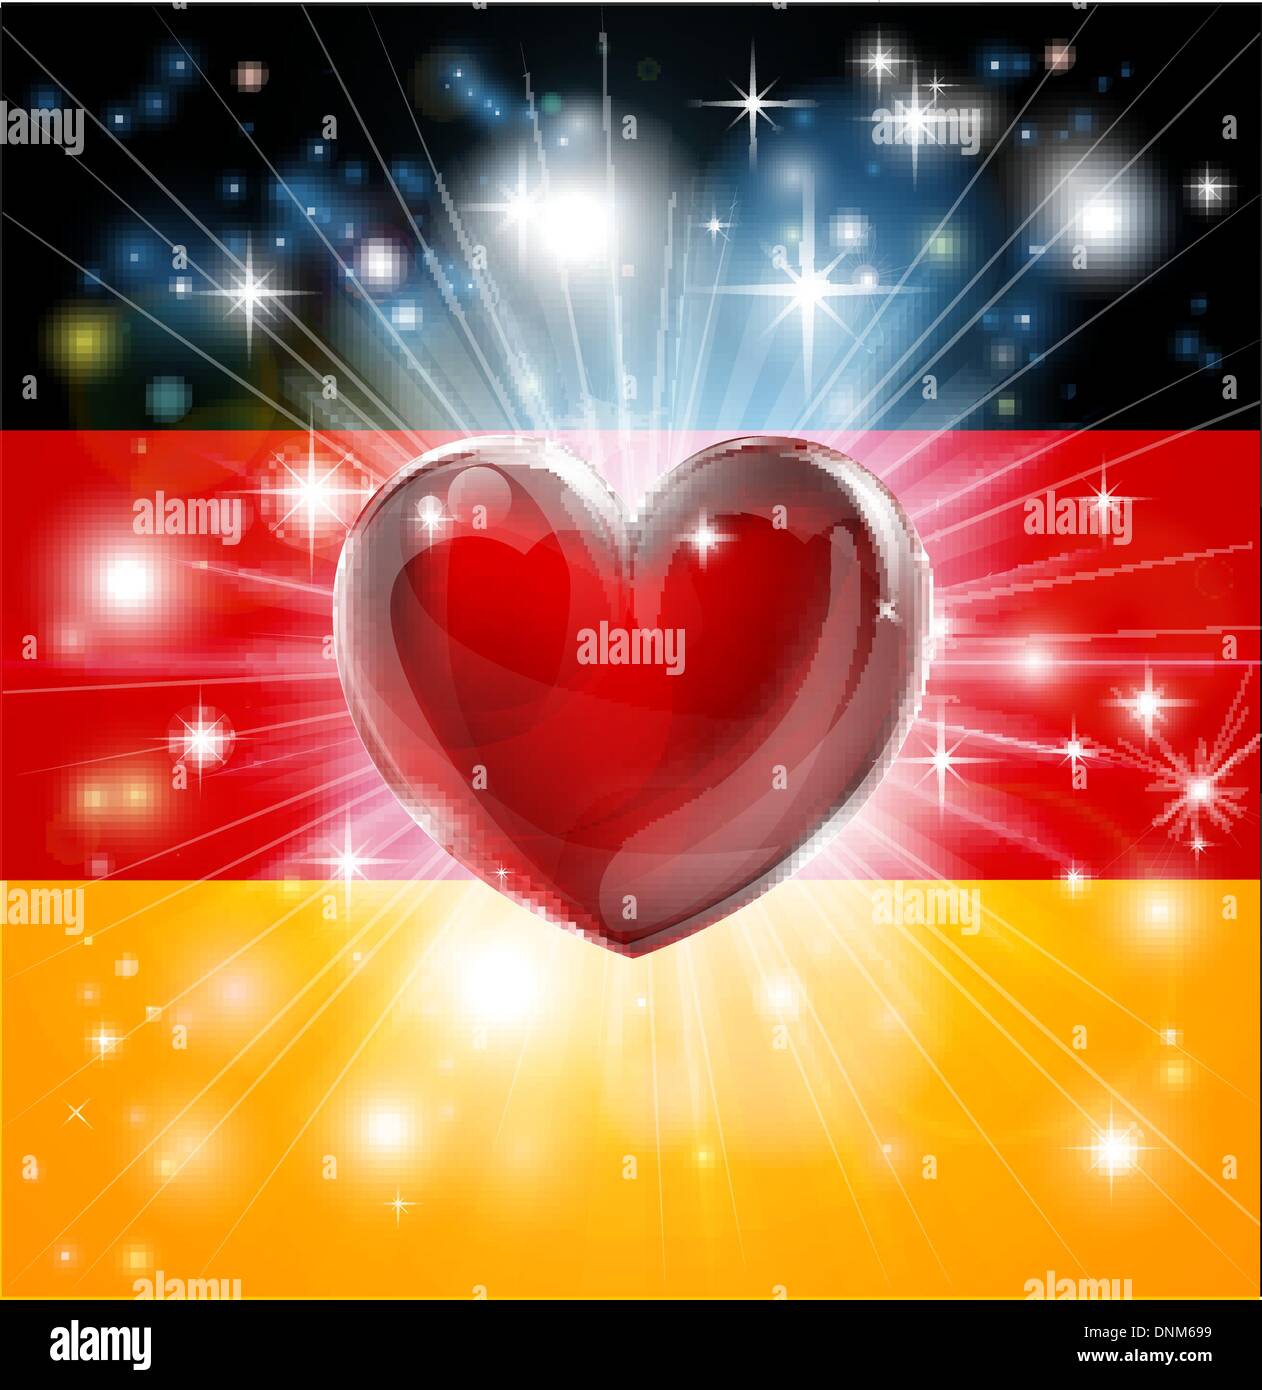 Flagge von Deutschland patriotischen Hintergrund mit pyrotechnischen oder leicht platzen und Liebe Herz in der Mitte Stock Vektor